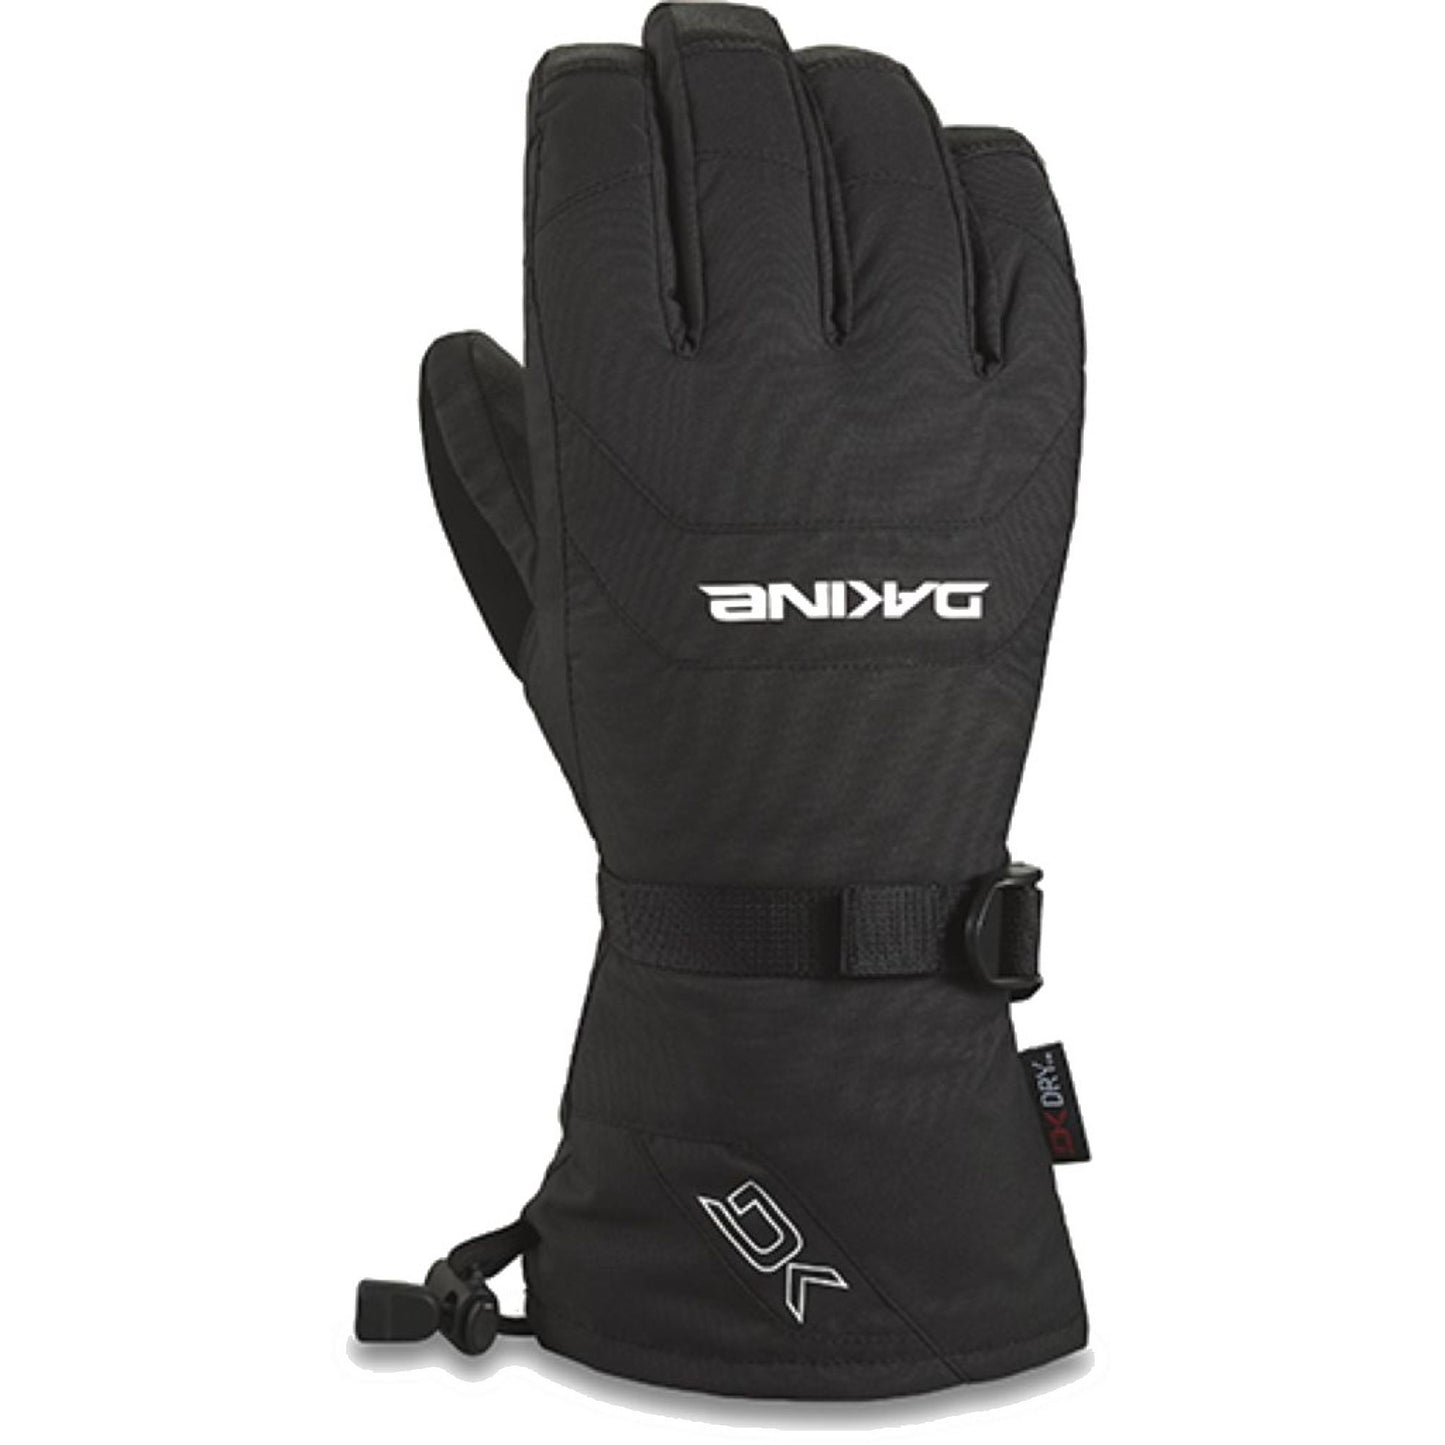 Dakine Leather Scout Glove Black - Dakine Snow Gloves